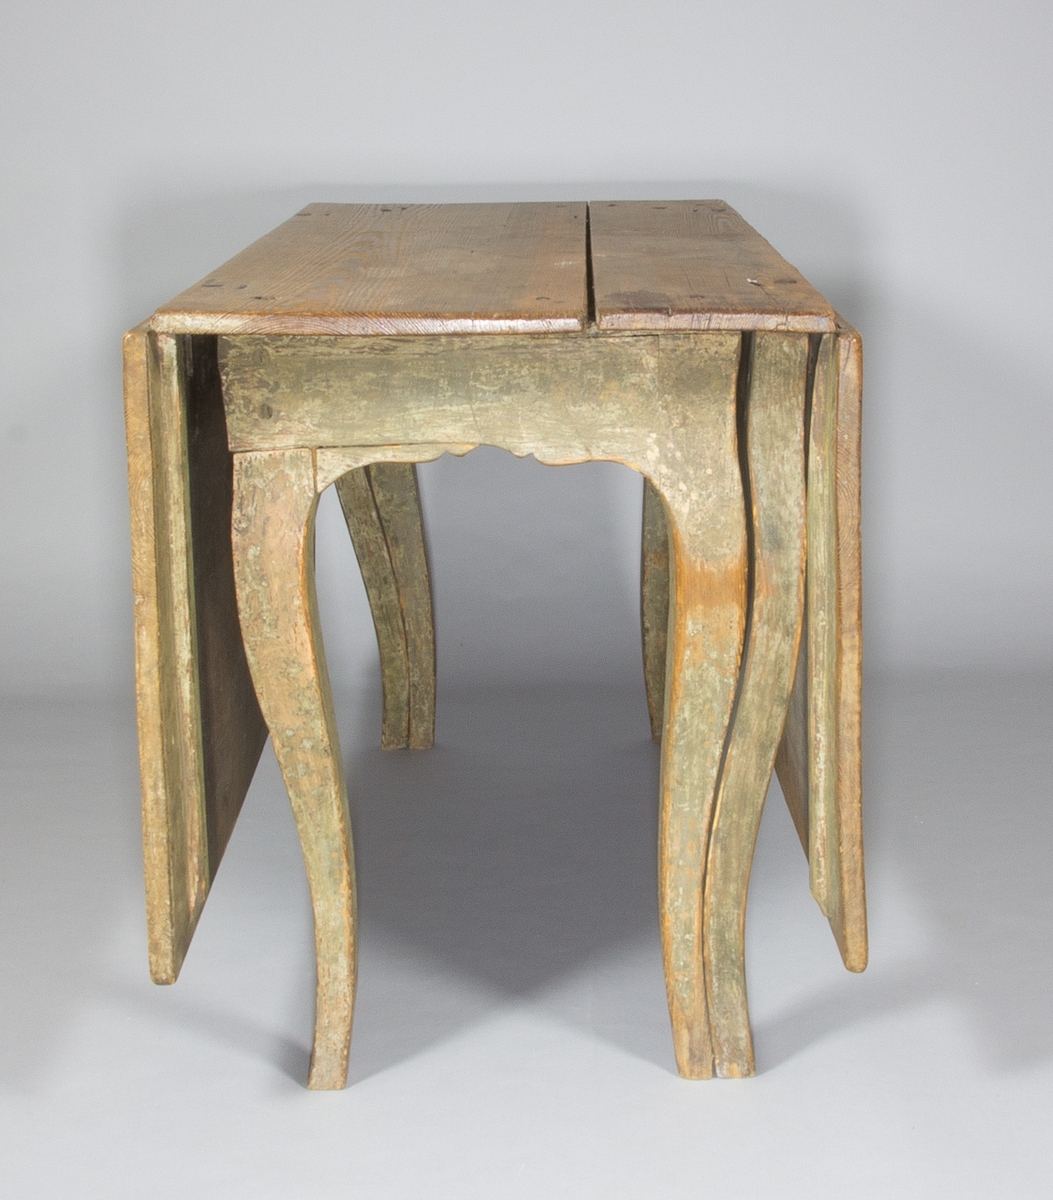 Slagbord i trä, sannolikt furu. Svängda ben, sarg med arbalètedekor. Rektangulär bordsskiva. Dubbla grindar som kan svängas ut och på vilka två större skivor kan vila.